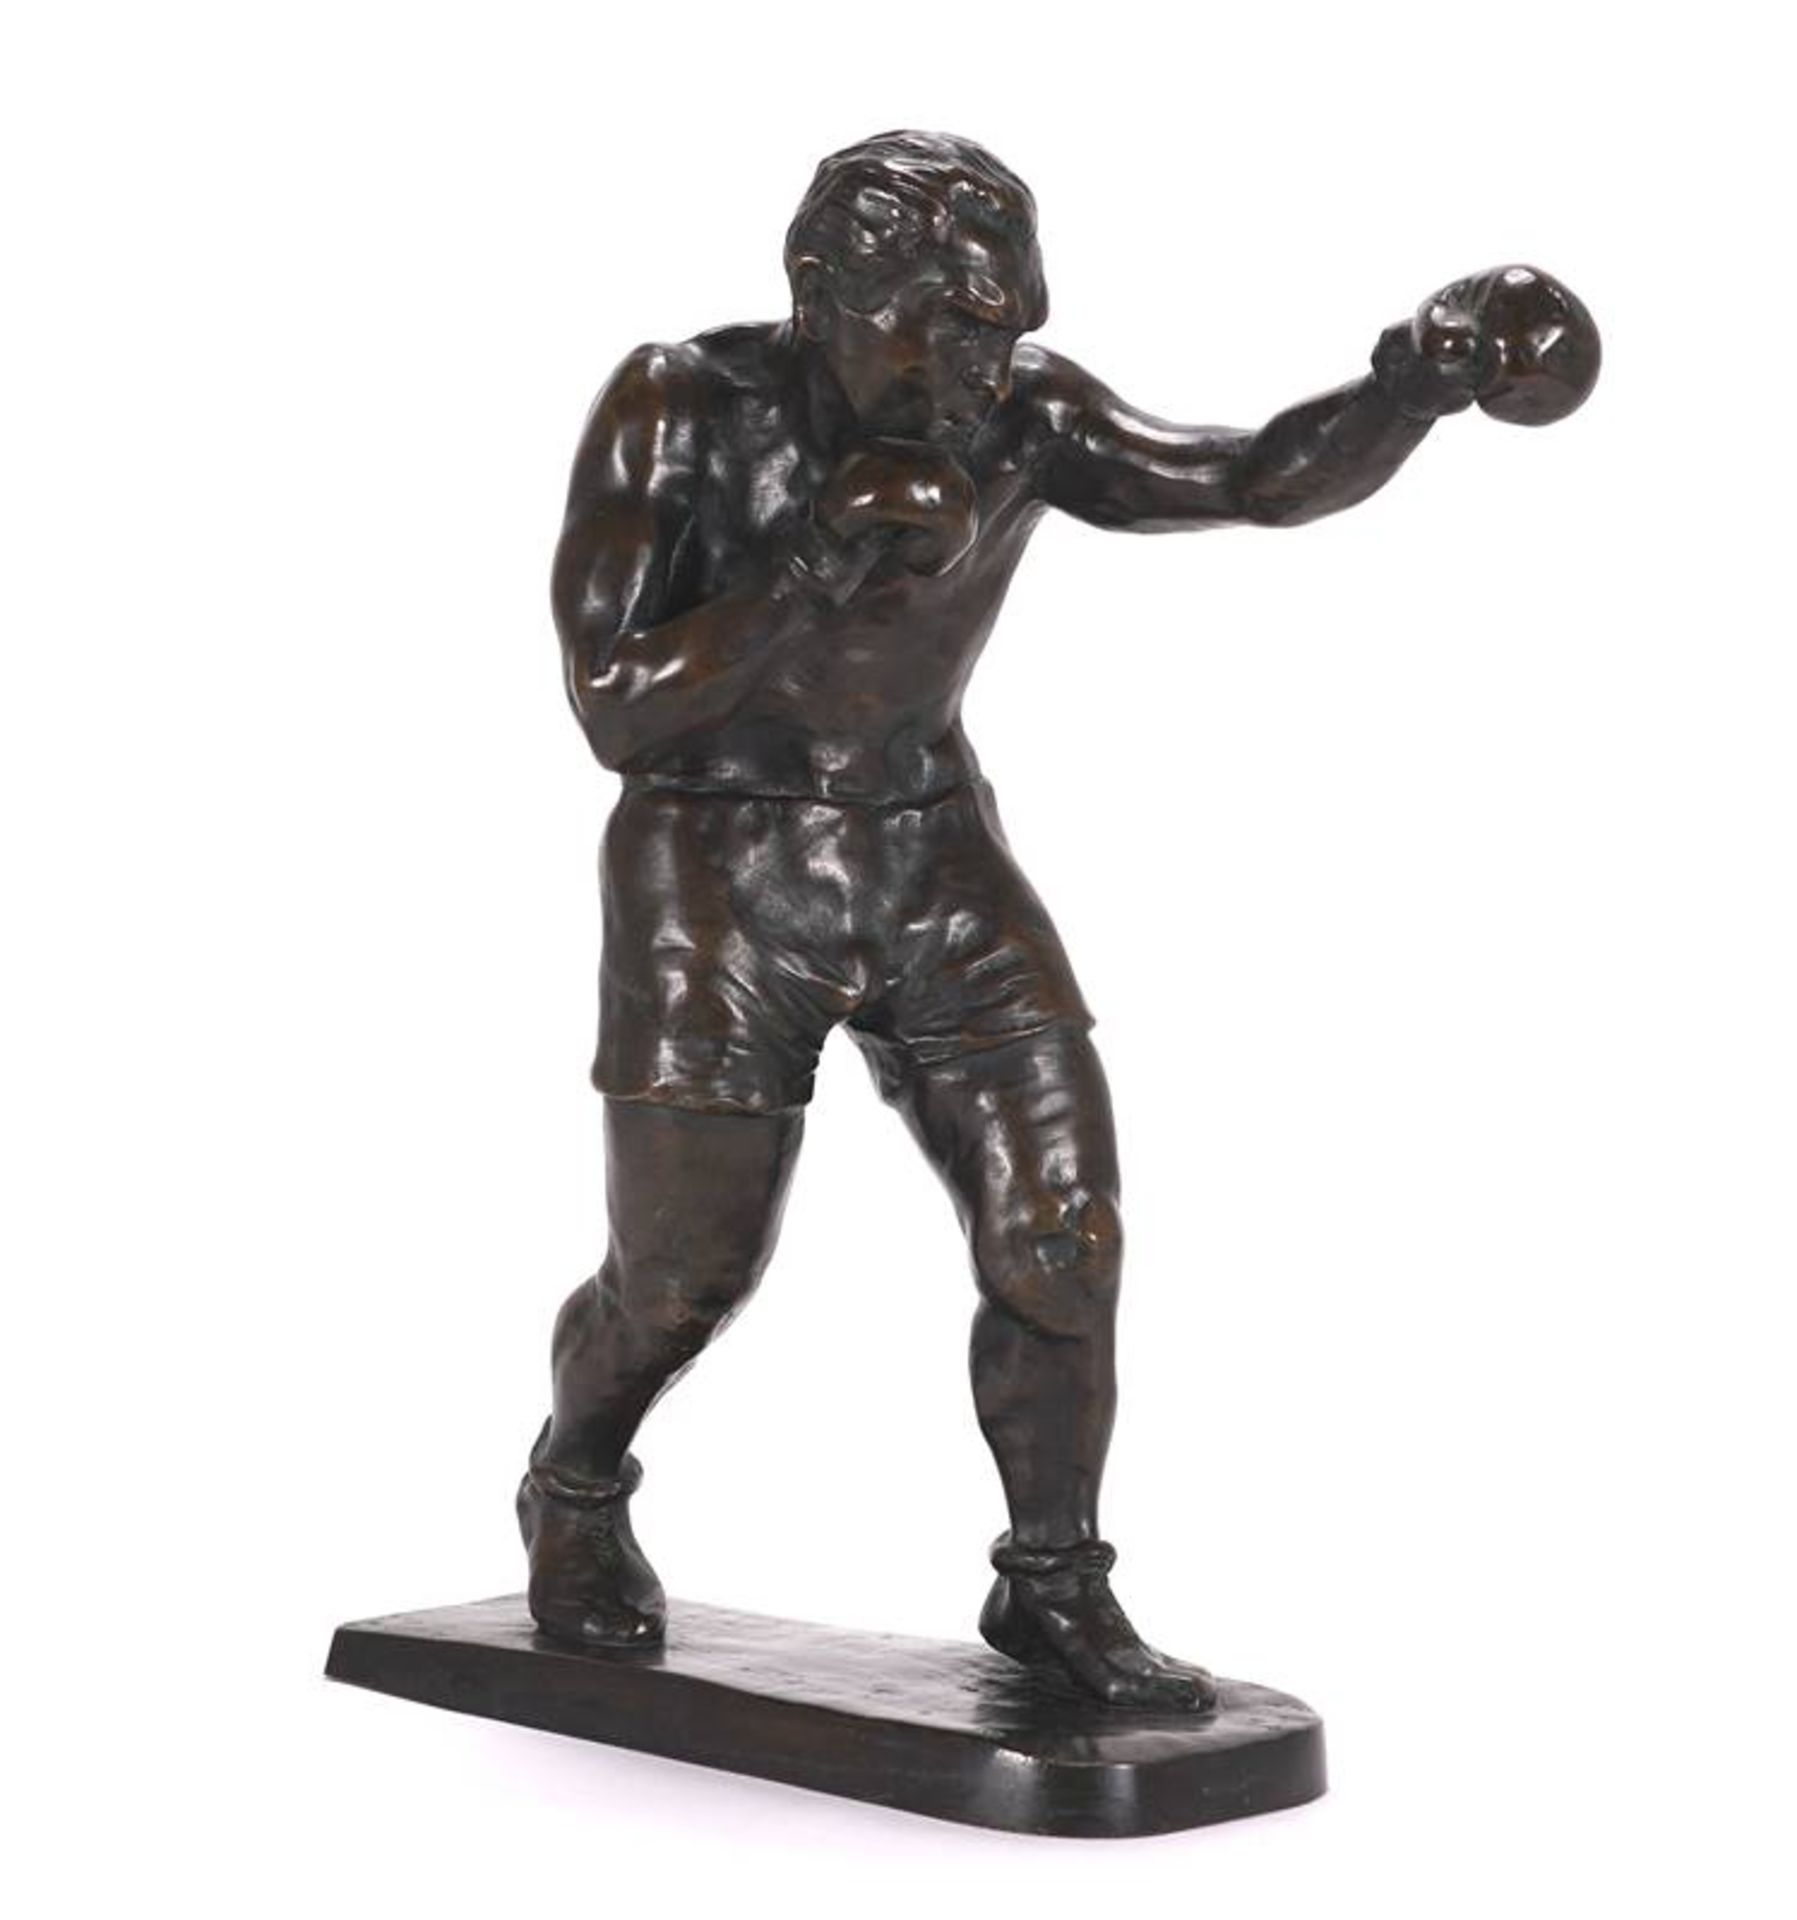 Boxer sculpture